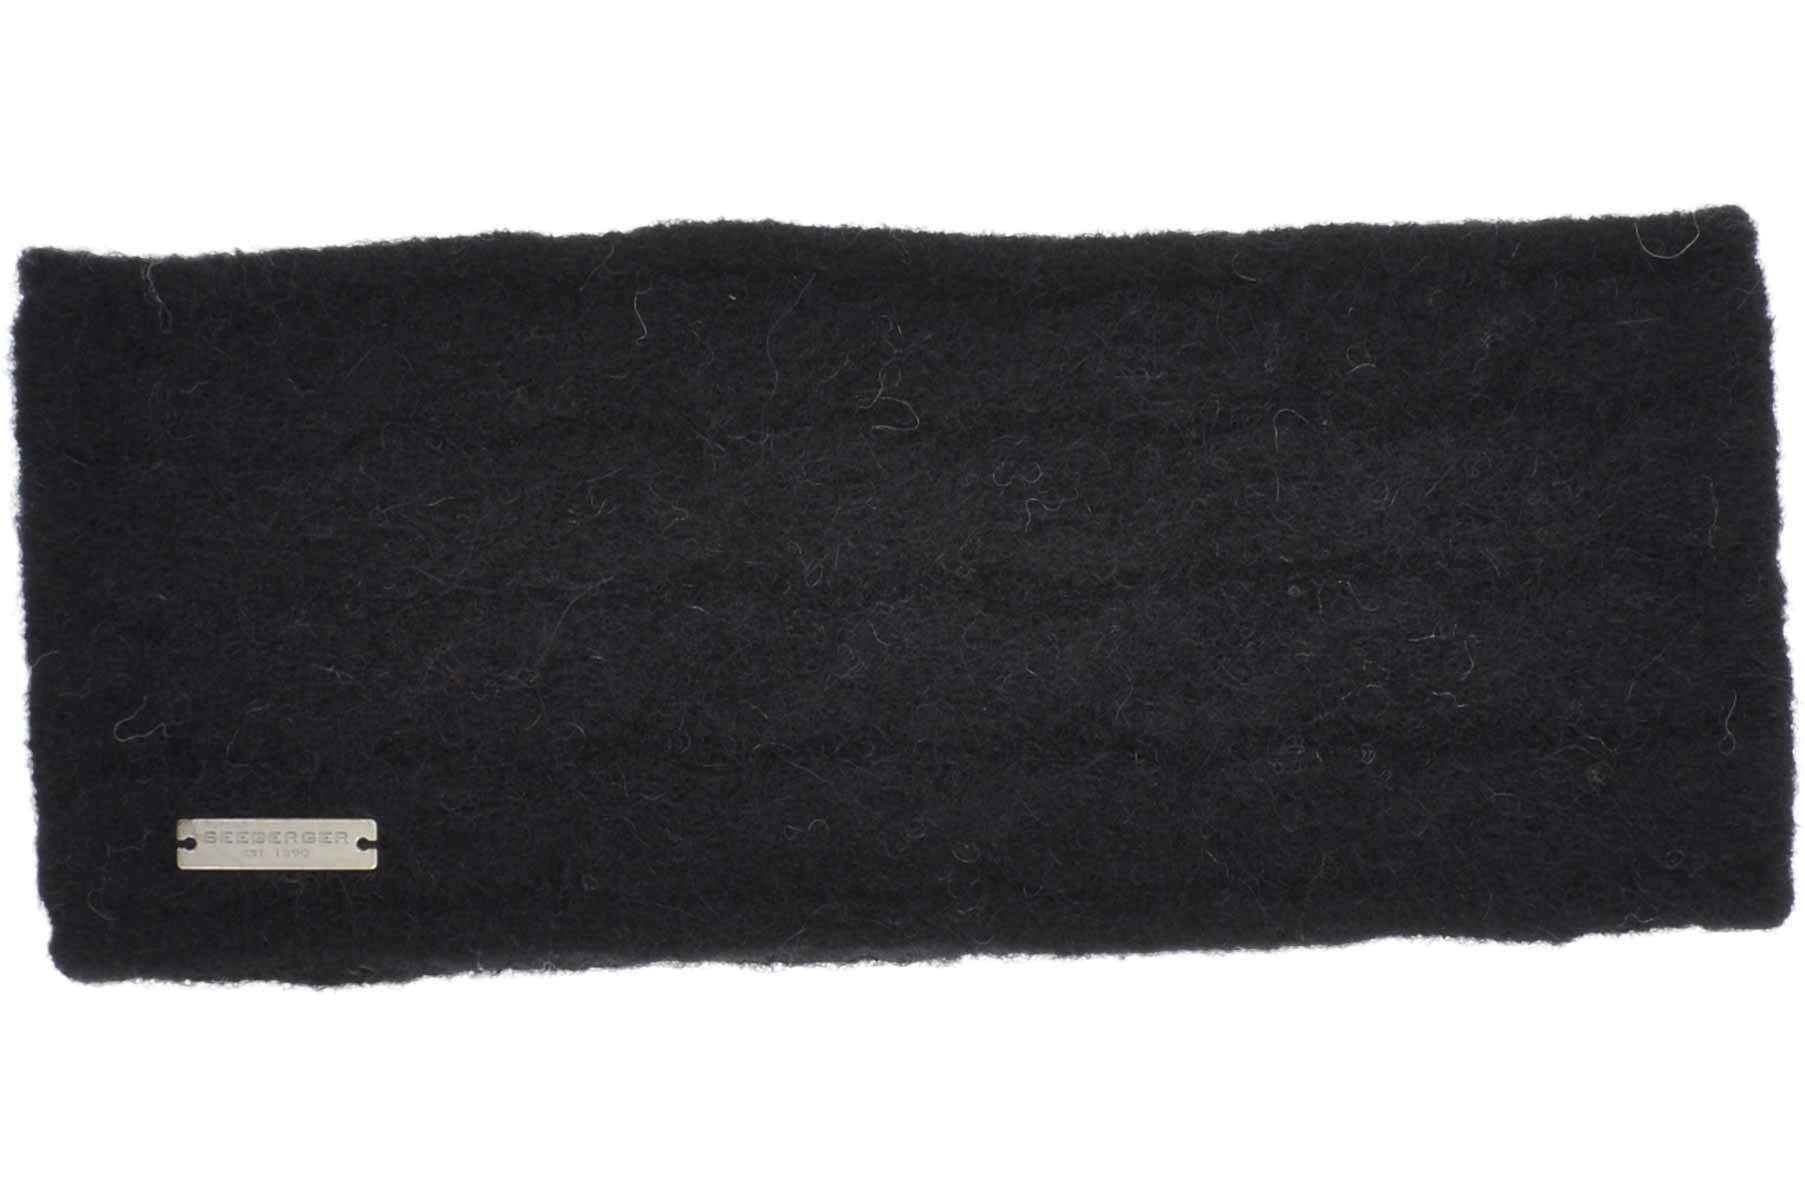 19106-0 Strick schwarz Stirnband in Stirnband Seeberger Zopfmuster Alpakamix